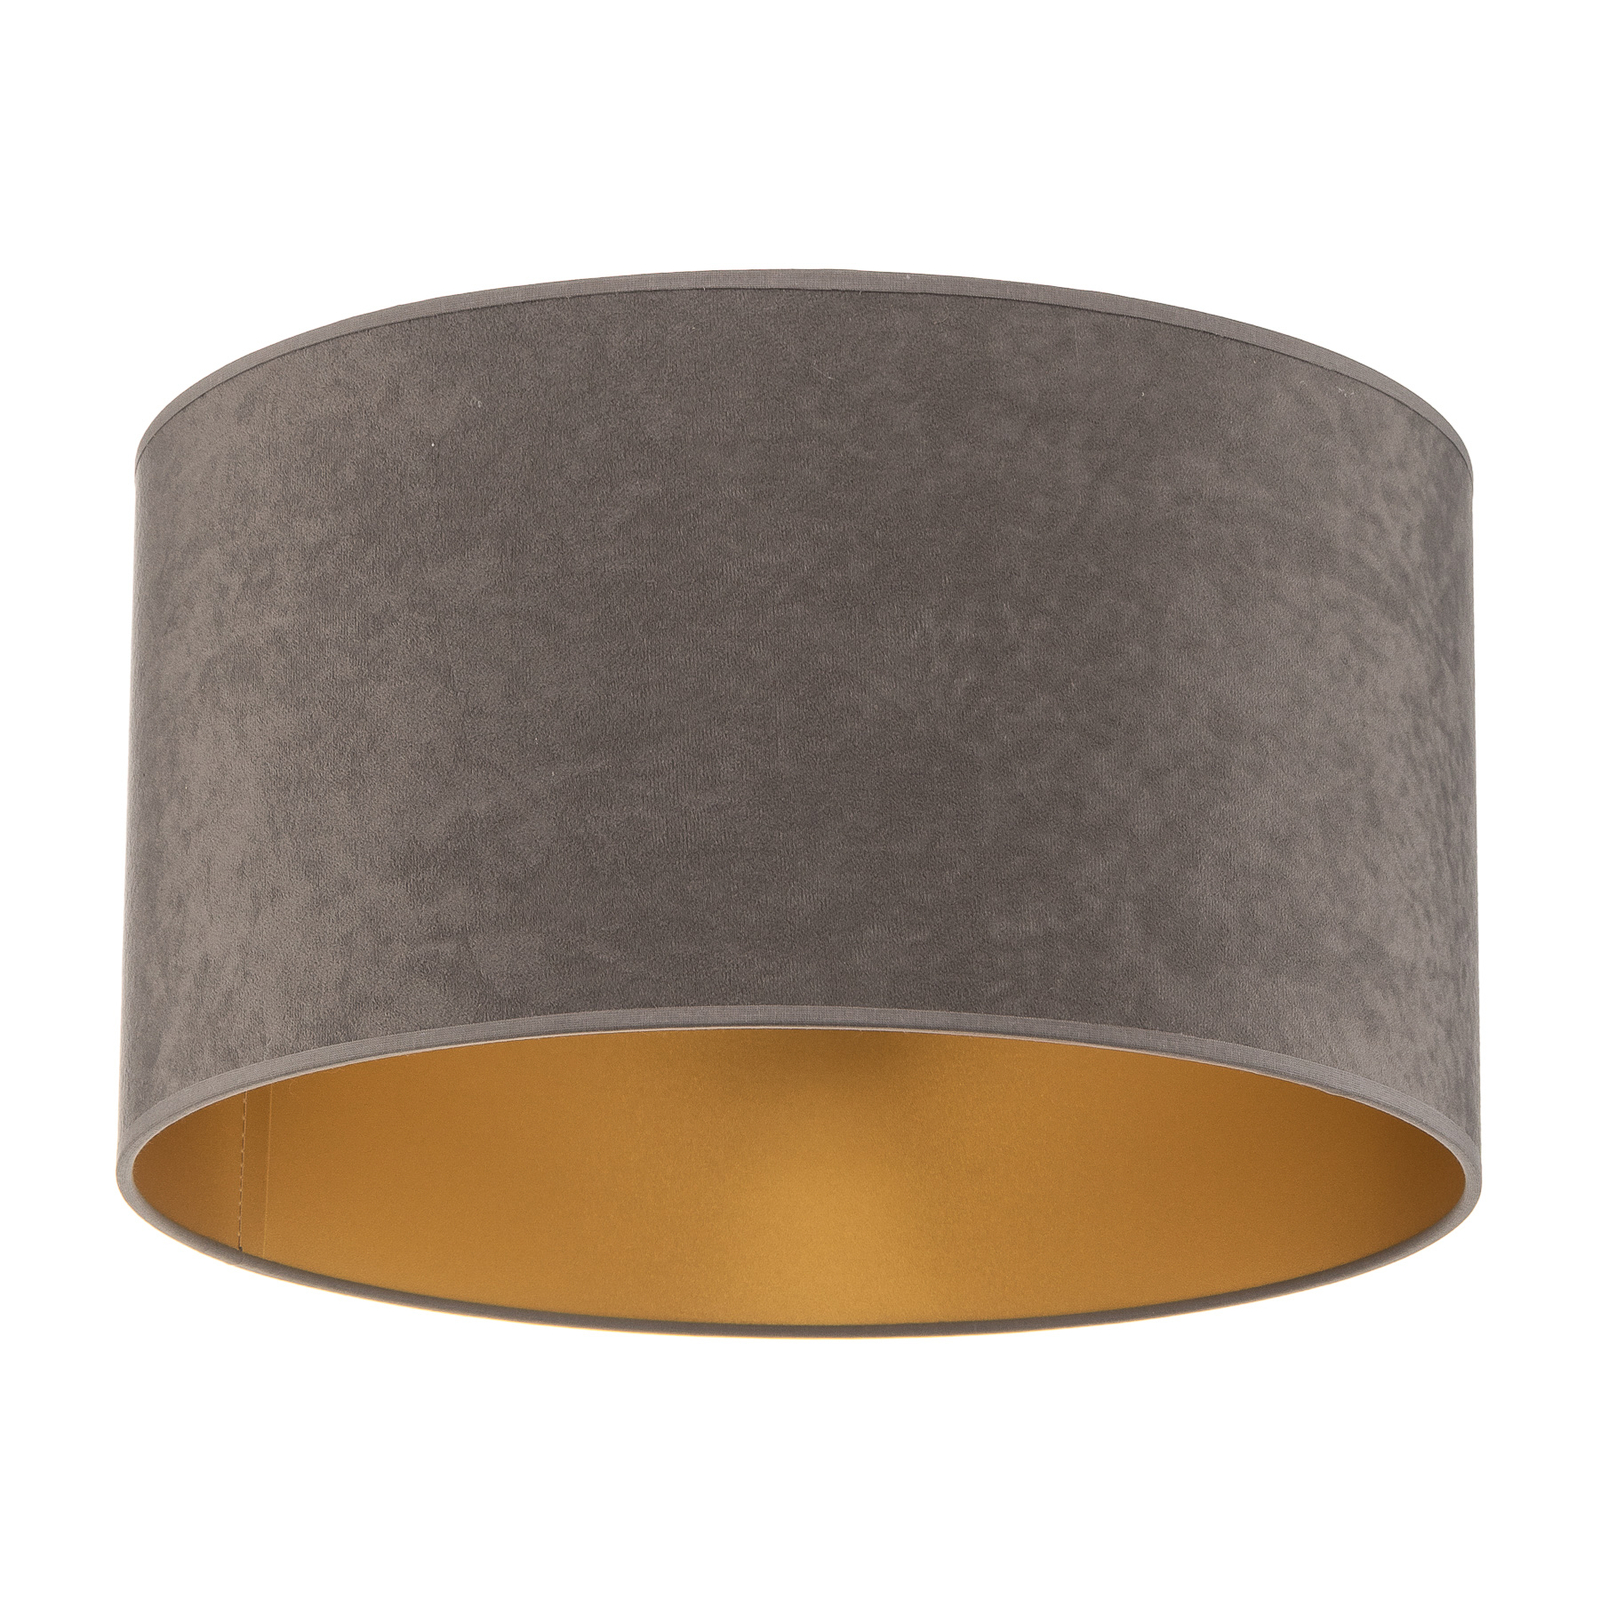 Plafondlamp Golden Roller Ø 40cm grijs/goud